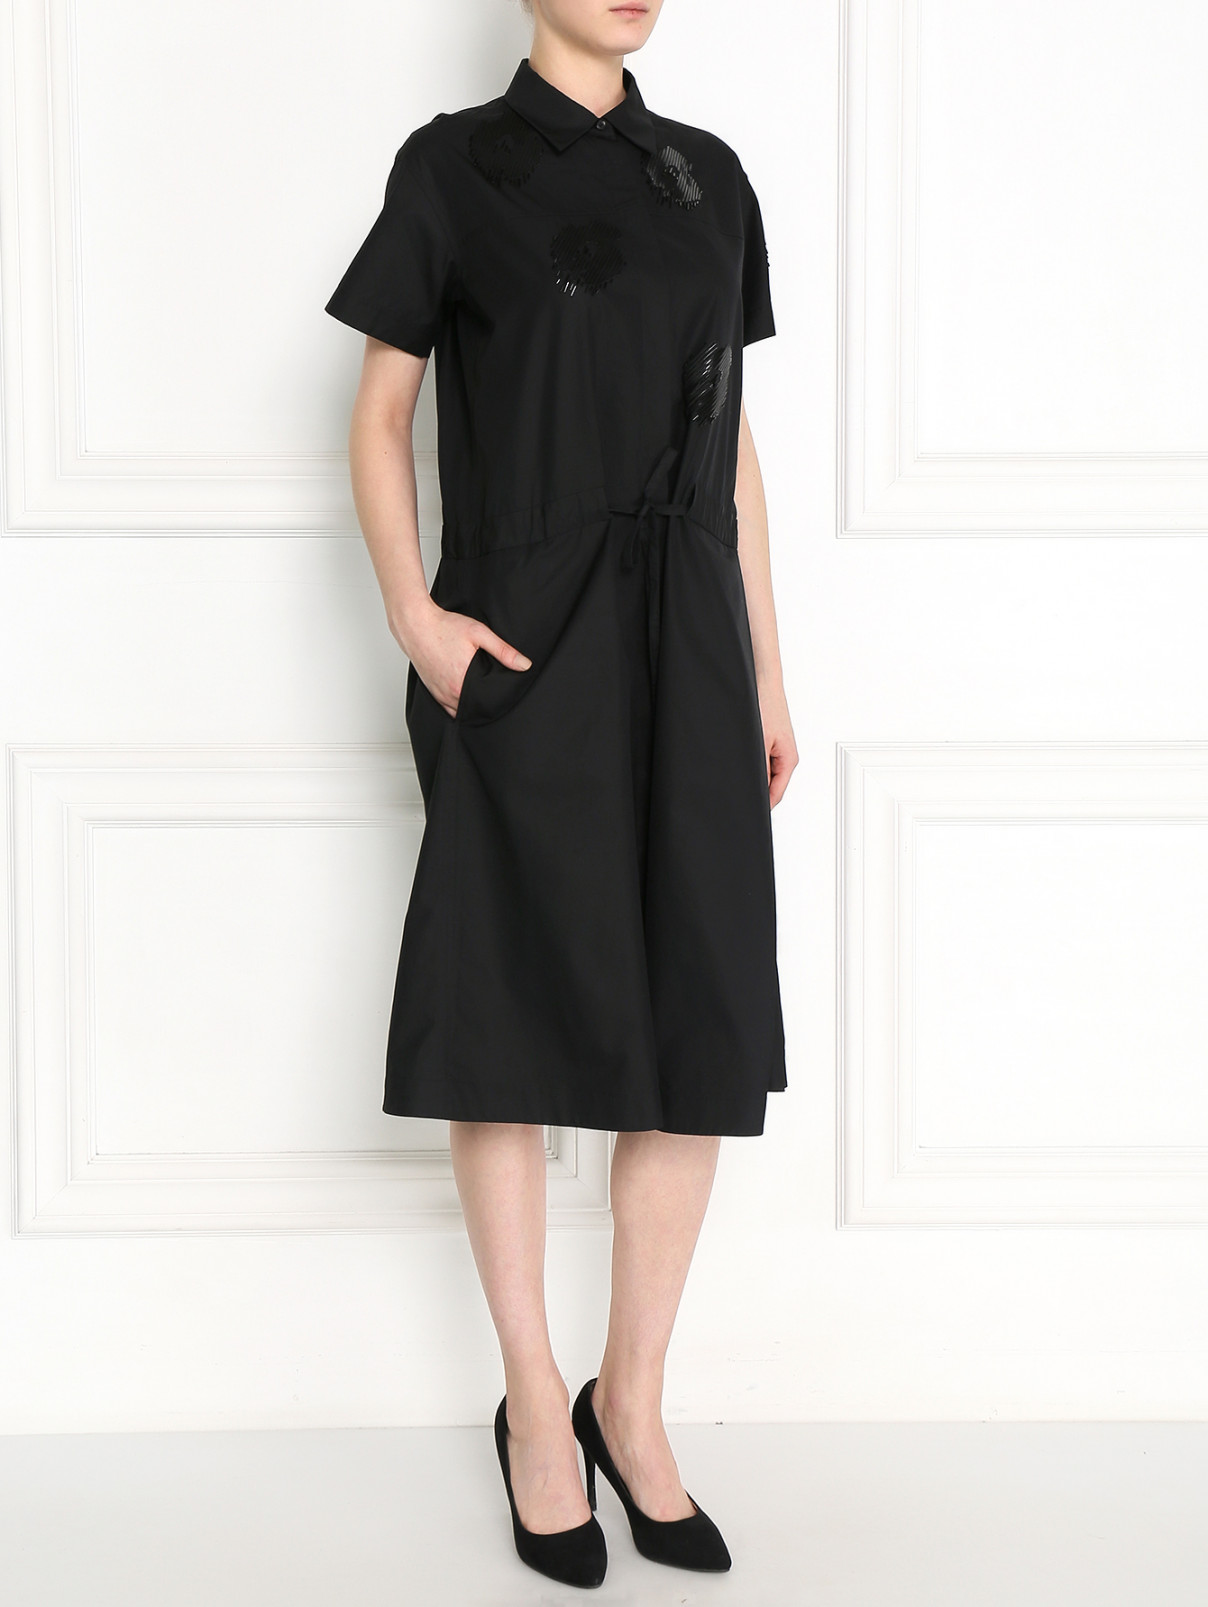 Платье-рубашка из хлопка с аппликацией Jil Sander  –  Модель Общий вид  – Цвет:  Черный